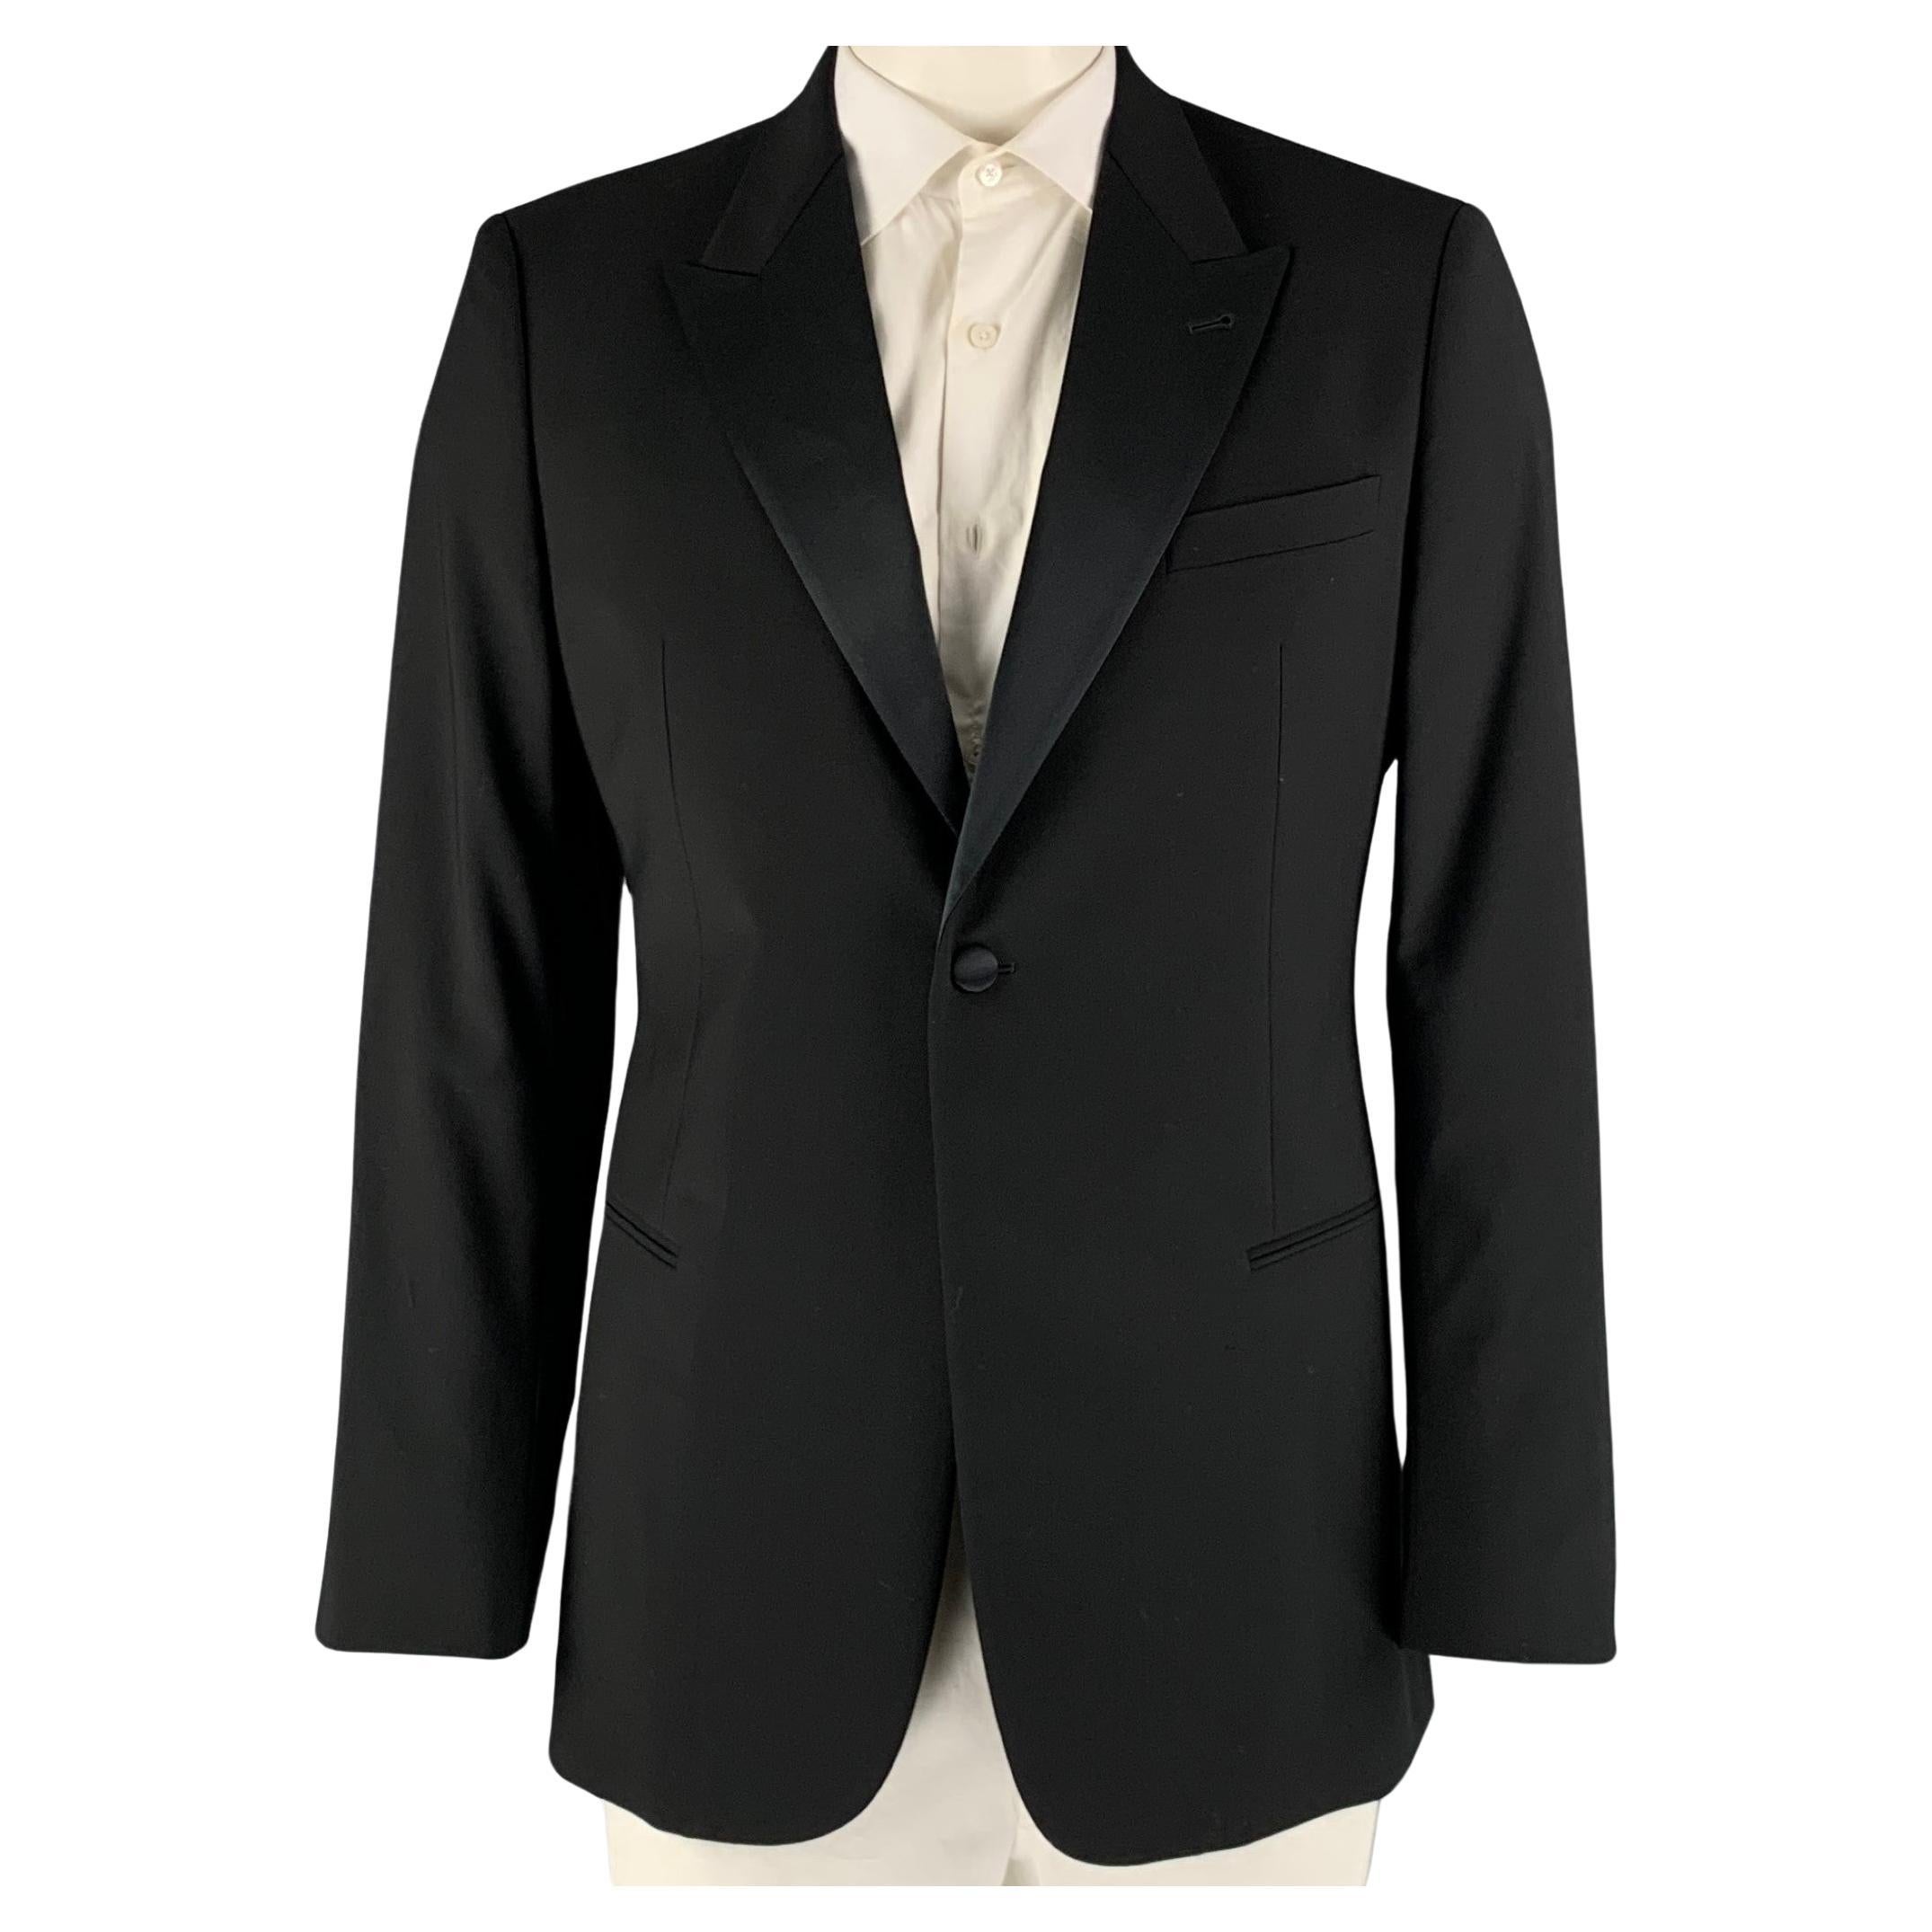 GIORGIO ARMANI Chest Size 42 Black Solid Wool Tuxedo Sport Coat